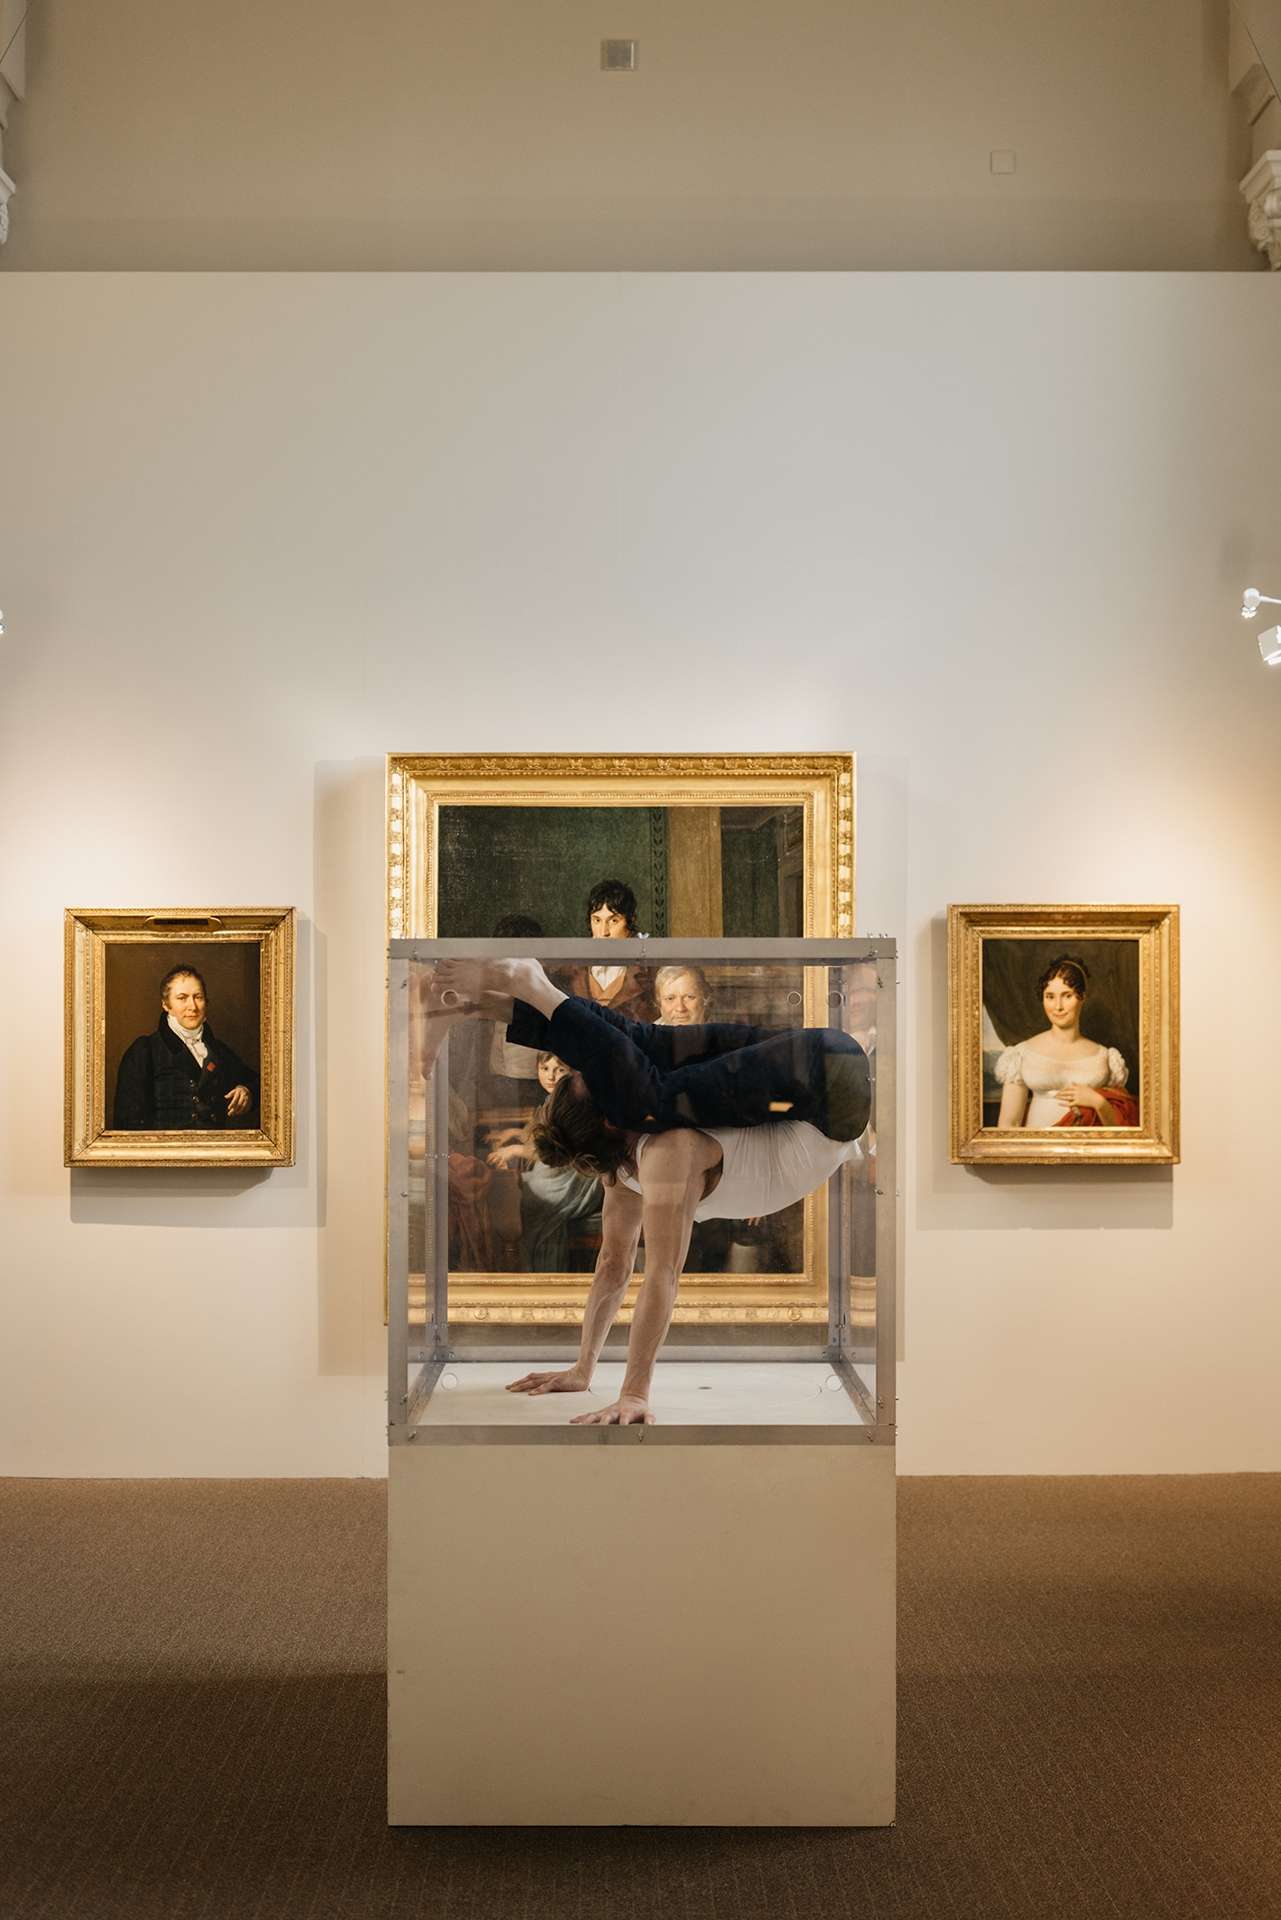 L'acrobate se contorsionne dans une vitrine d'exposition